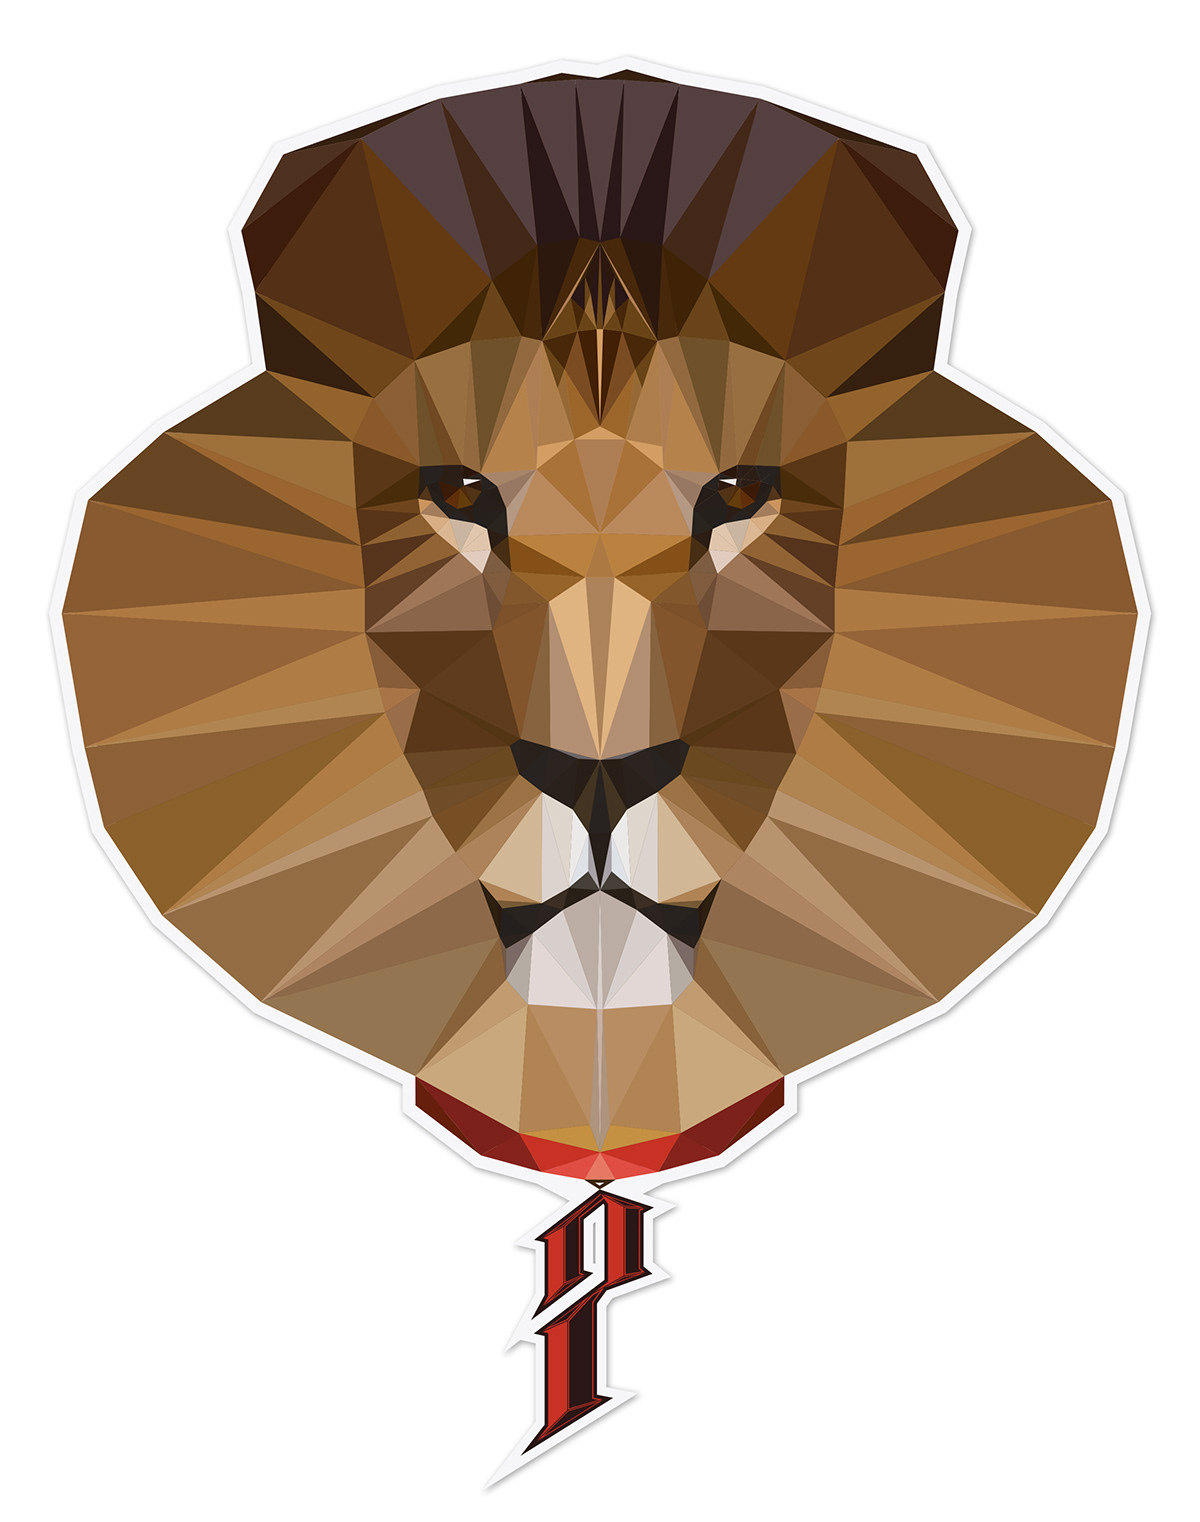 lion  PoligonArt  polygon  illustrator  vector  vectorart  7Issue  Illustration